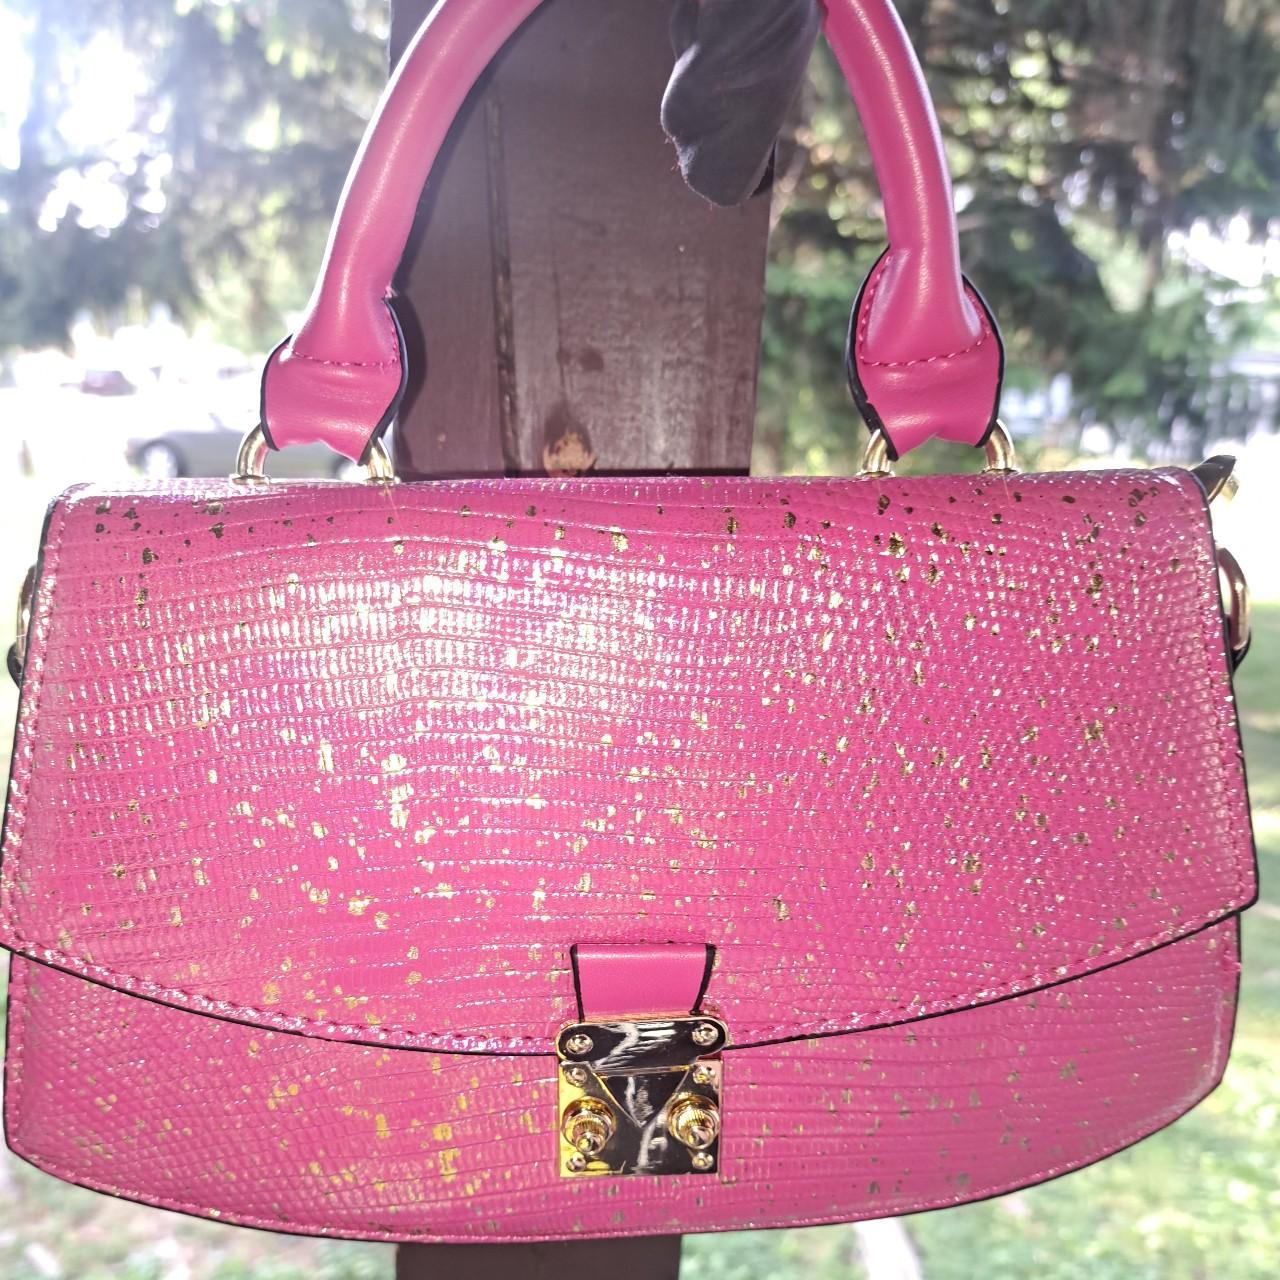 NWOT Barbie Pink Sparkly top handle bag This bag is - Depop